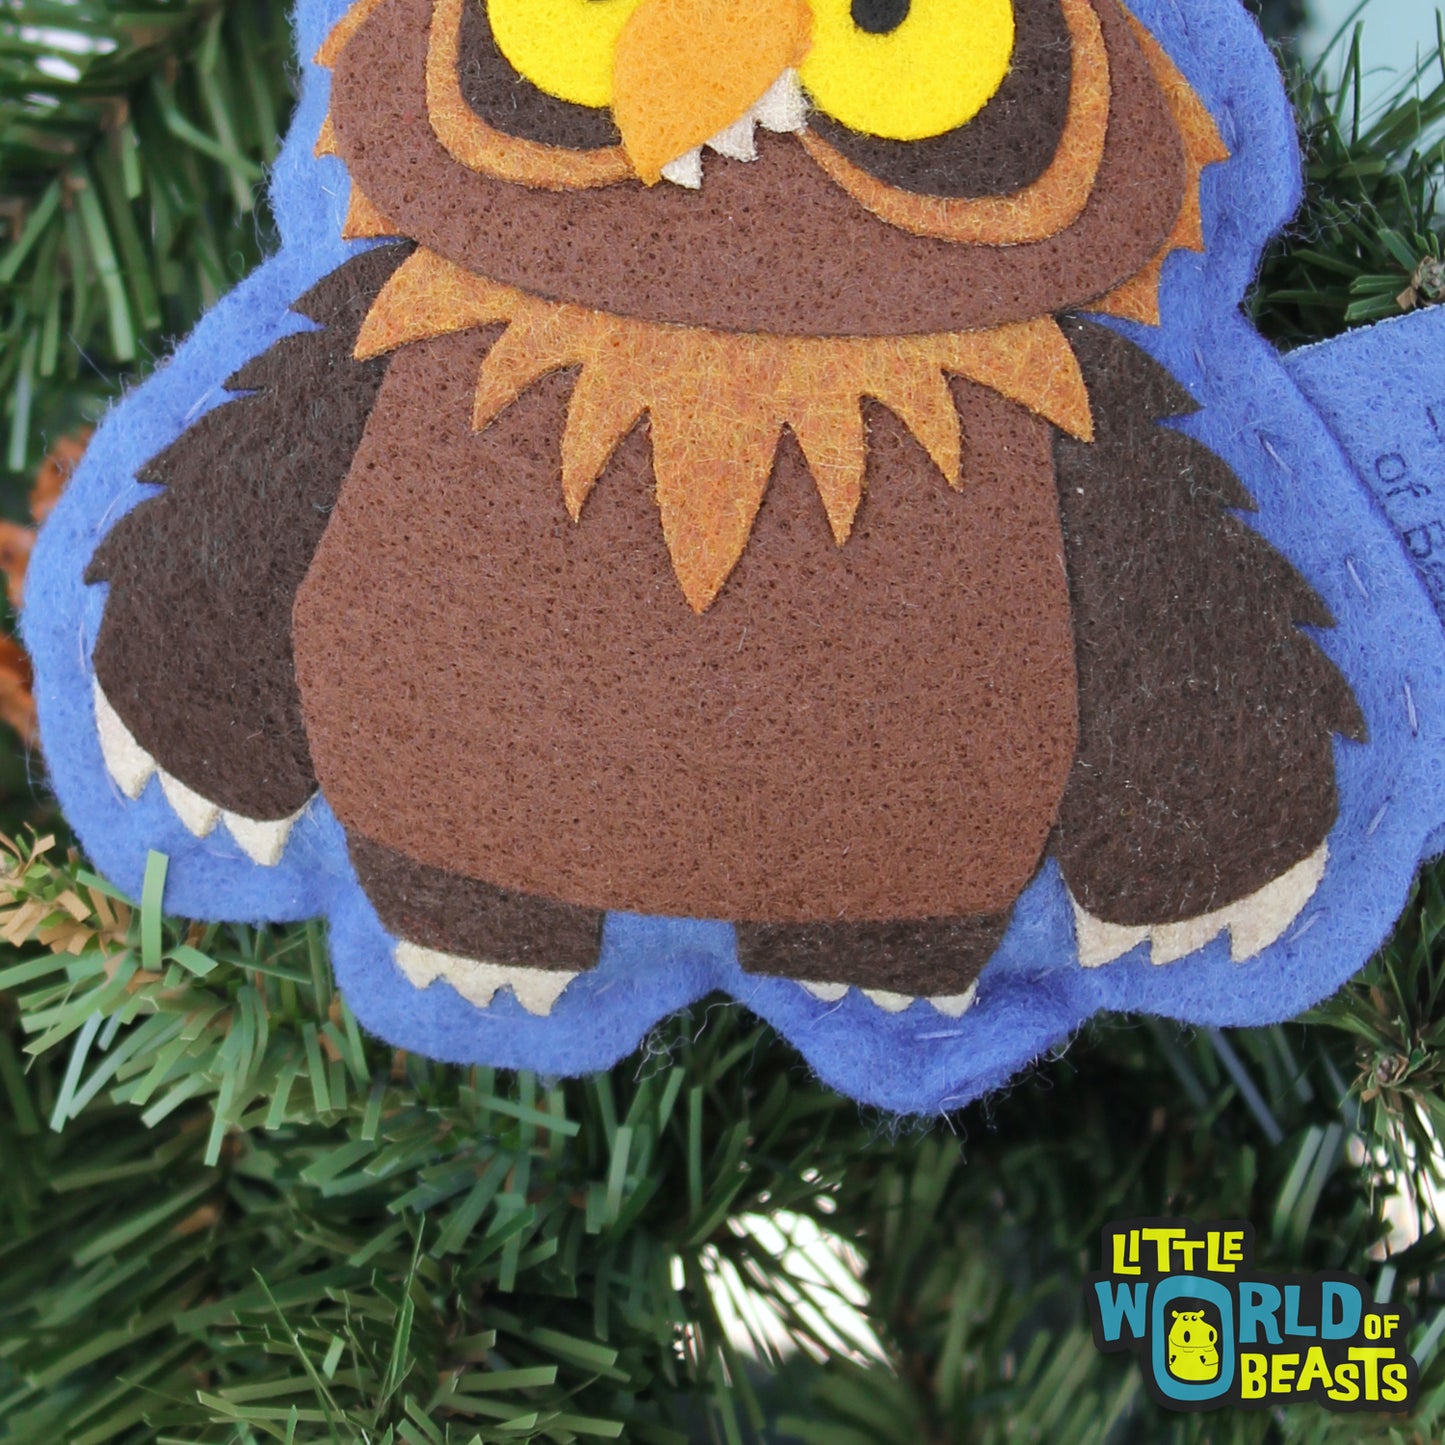 Owlbear -Felt Monster Ornament